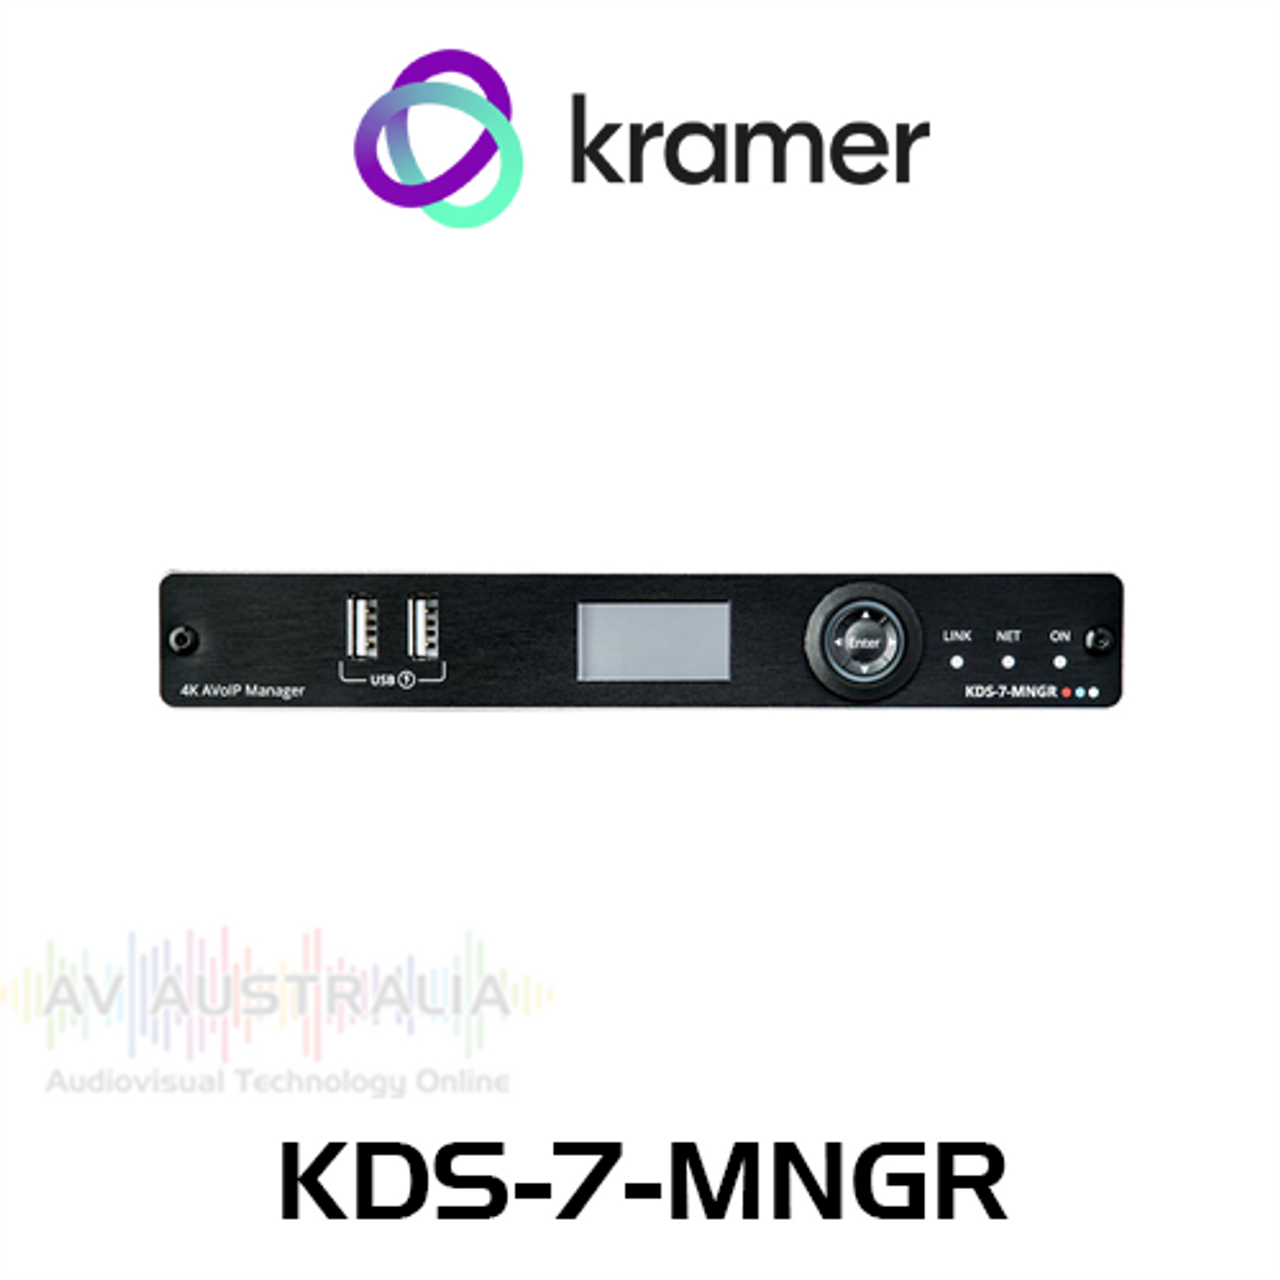 Kramer KDS-7-MNGR AVoIP Manager For KDS-7 Series